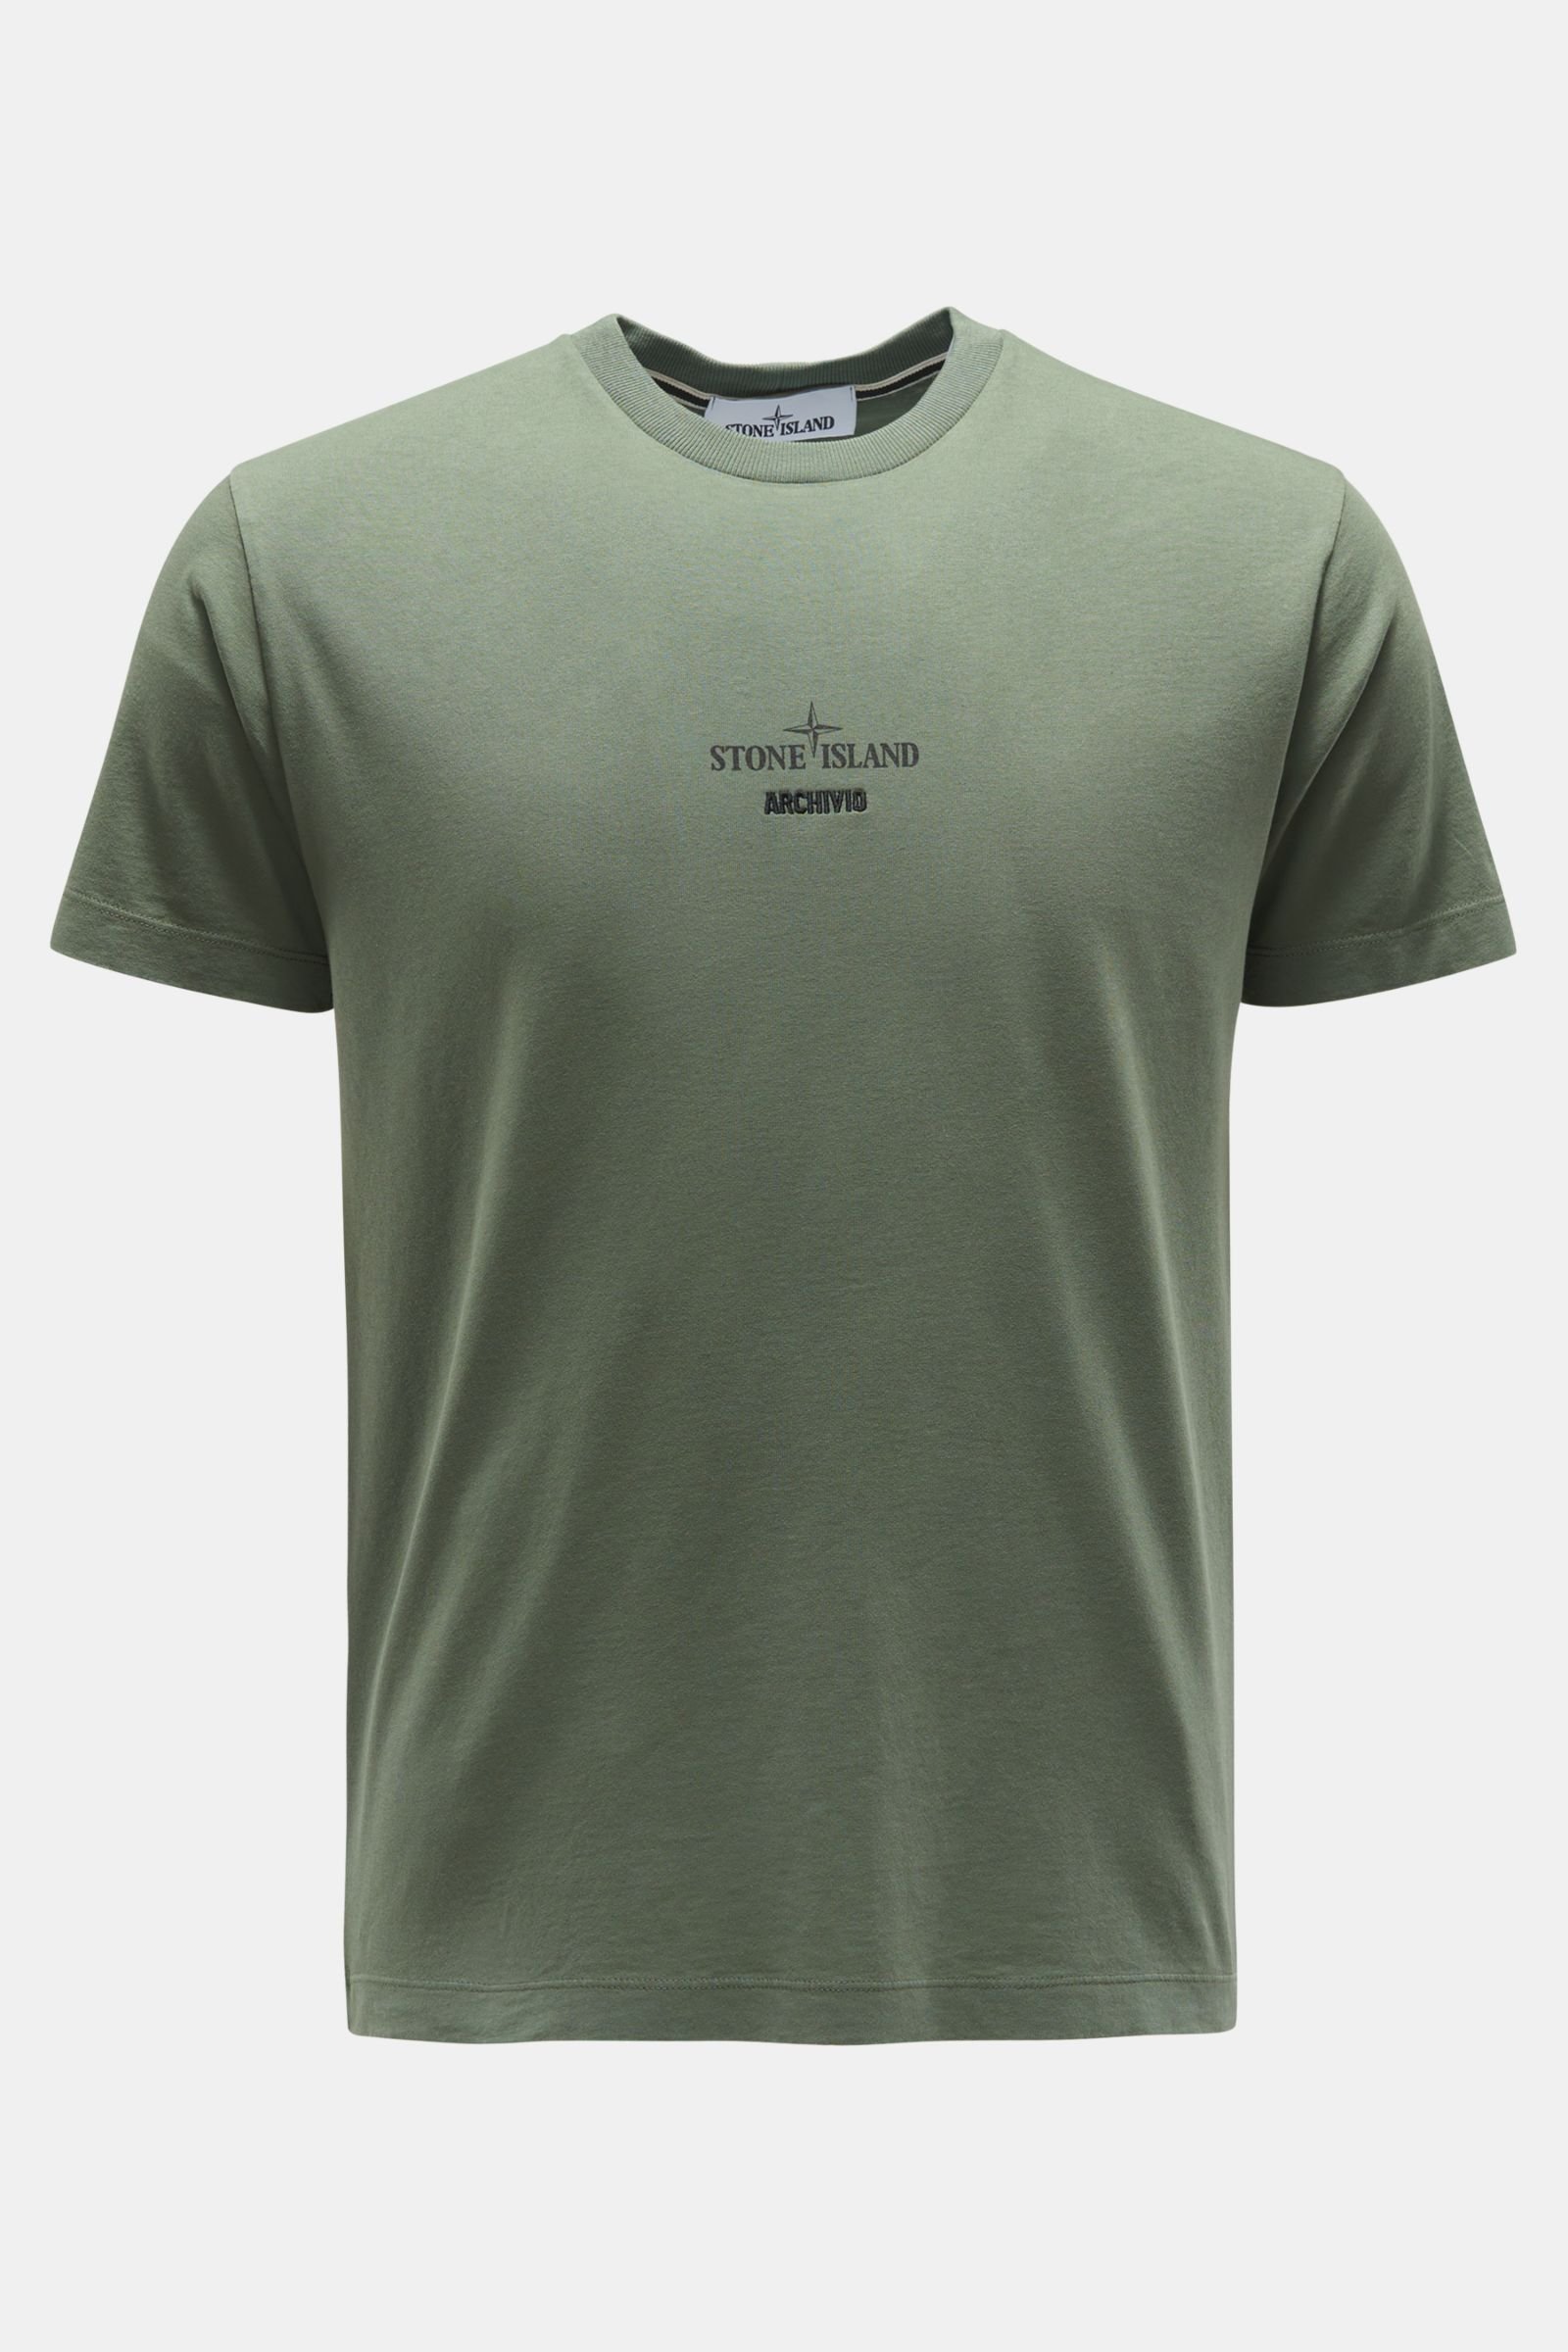 Rundhals-T-Shirt 'Archivio' graugrün